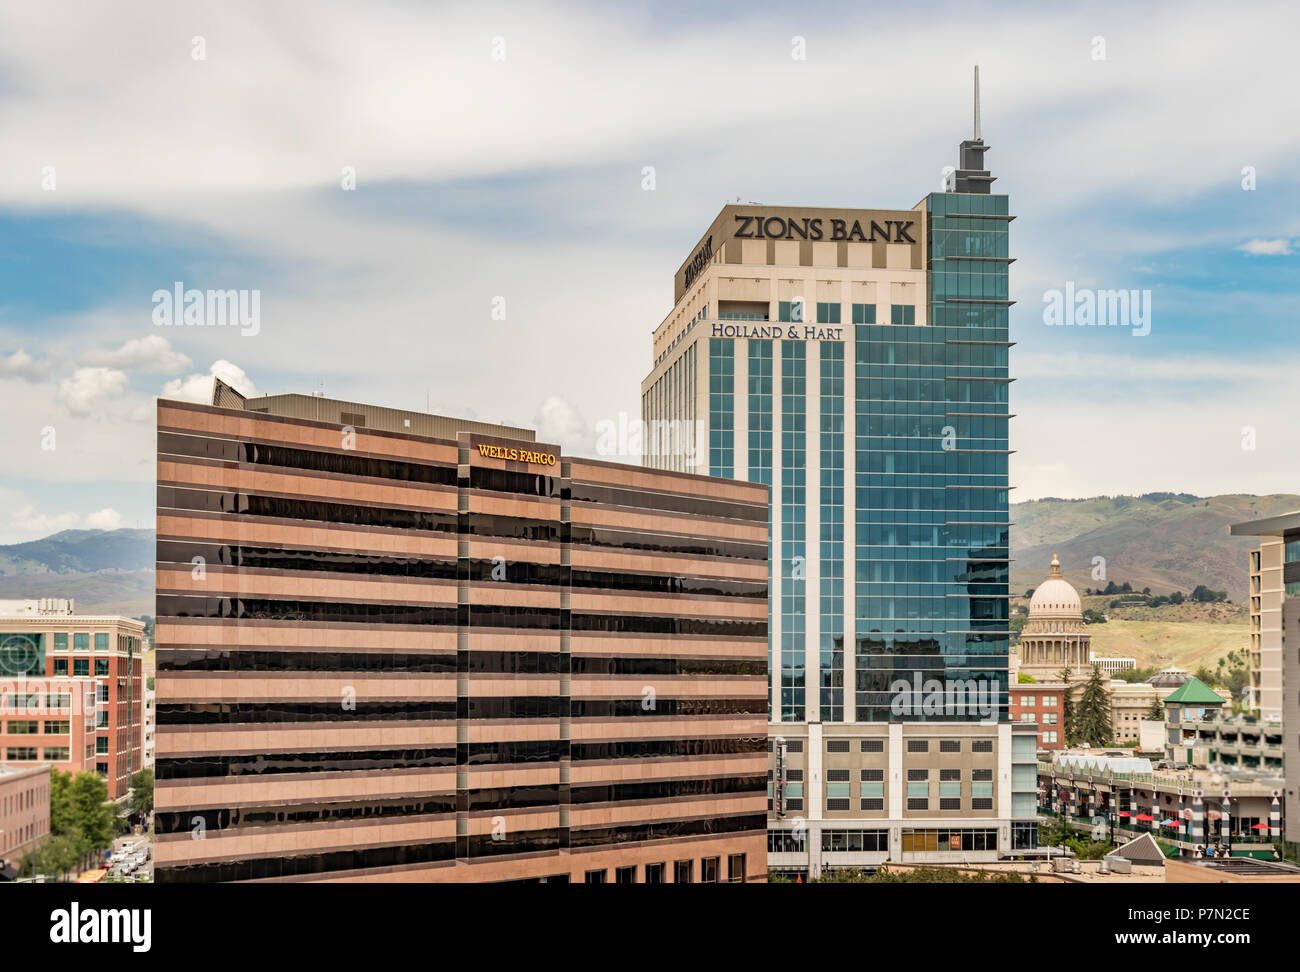 Boise, Idaho, USA - 7 juin 2018 : le centre-ville de Boise et gratte-ciel du quartier financier de la capitale de l'état des capacités. Zions Bank et Wells Fargo tours. Banque D'Images